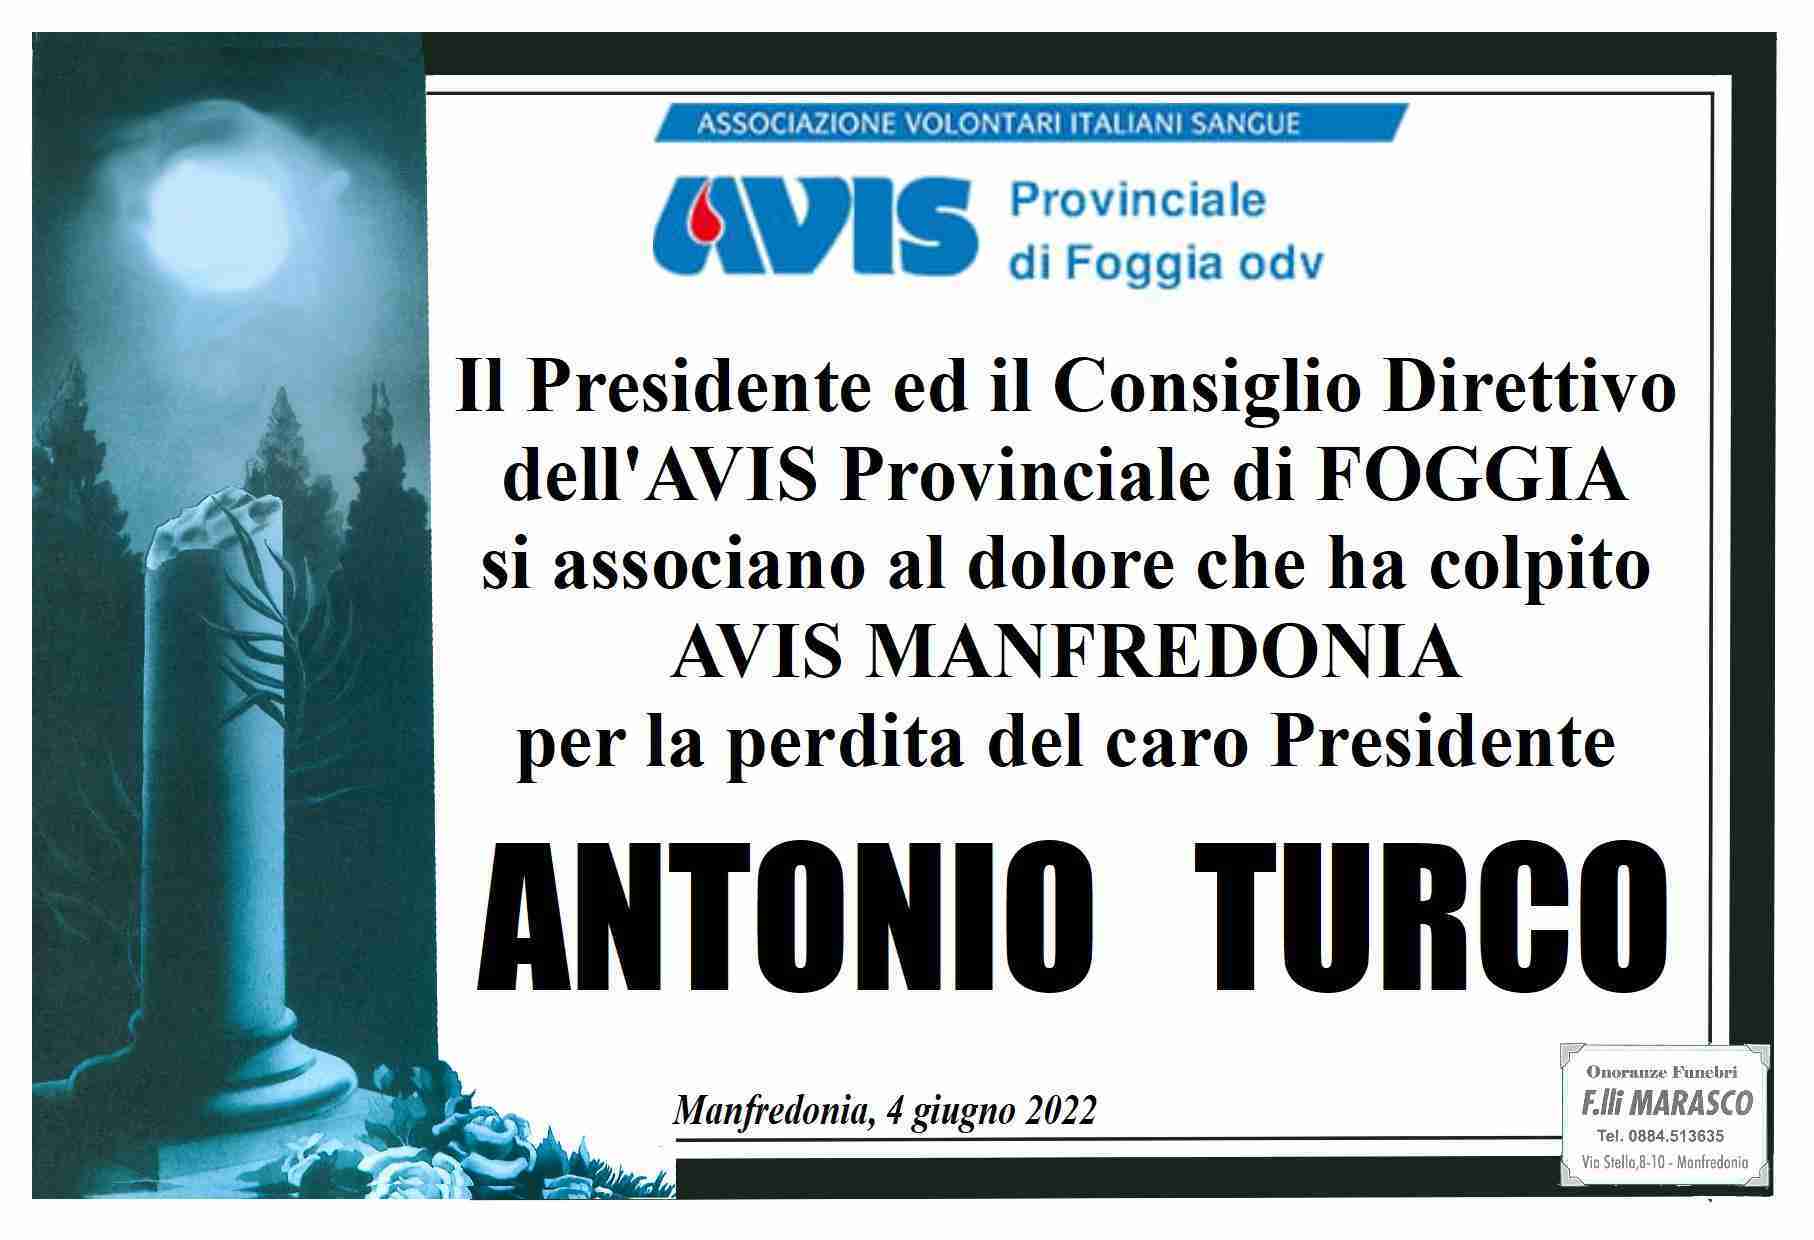 Antonio Turco